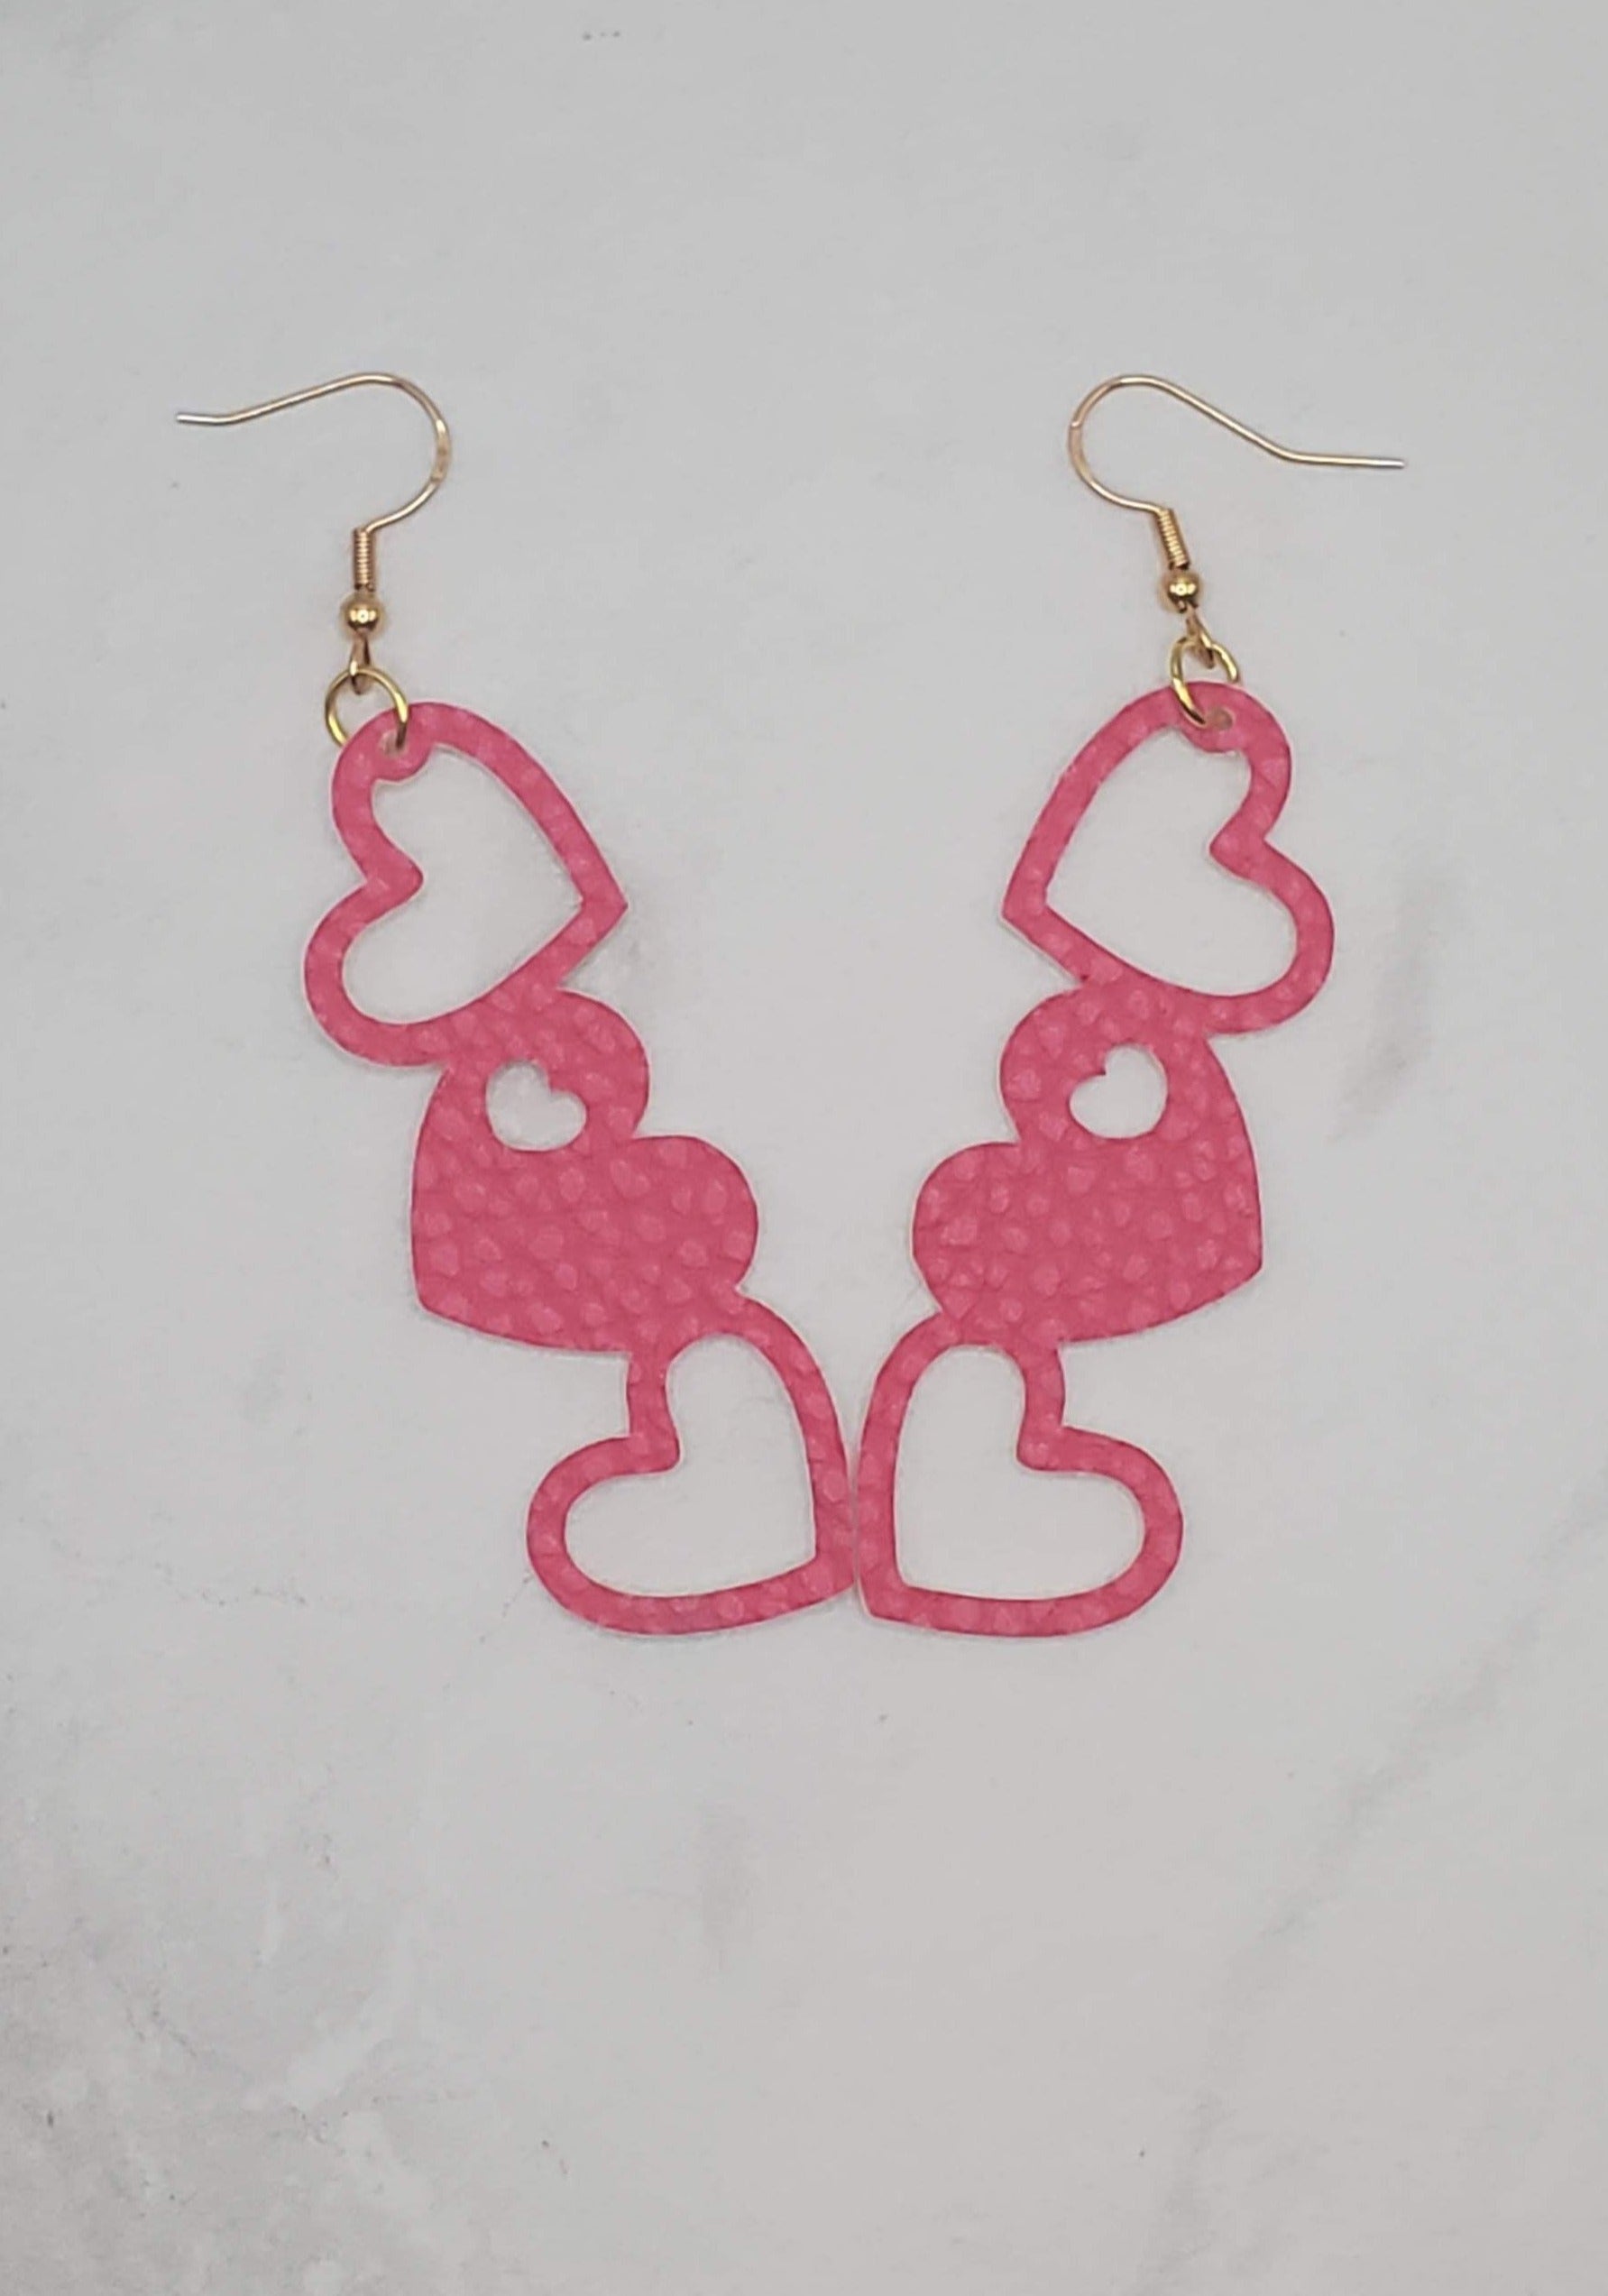 Hollow heart trio - dark pink faux leather earrings - braceliss 